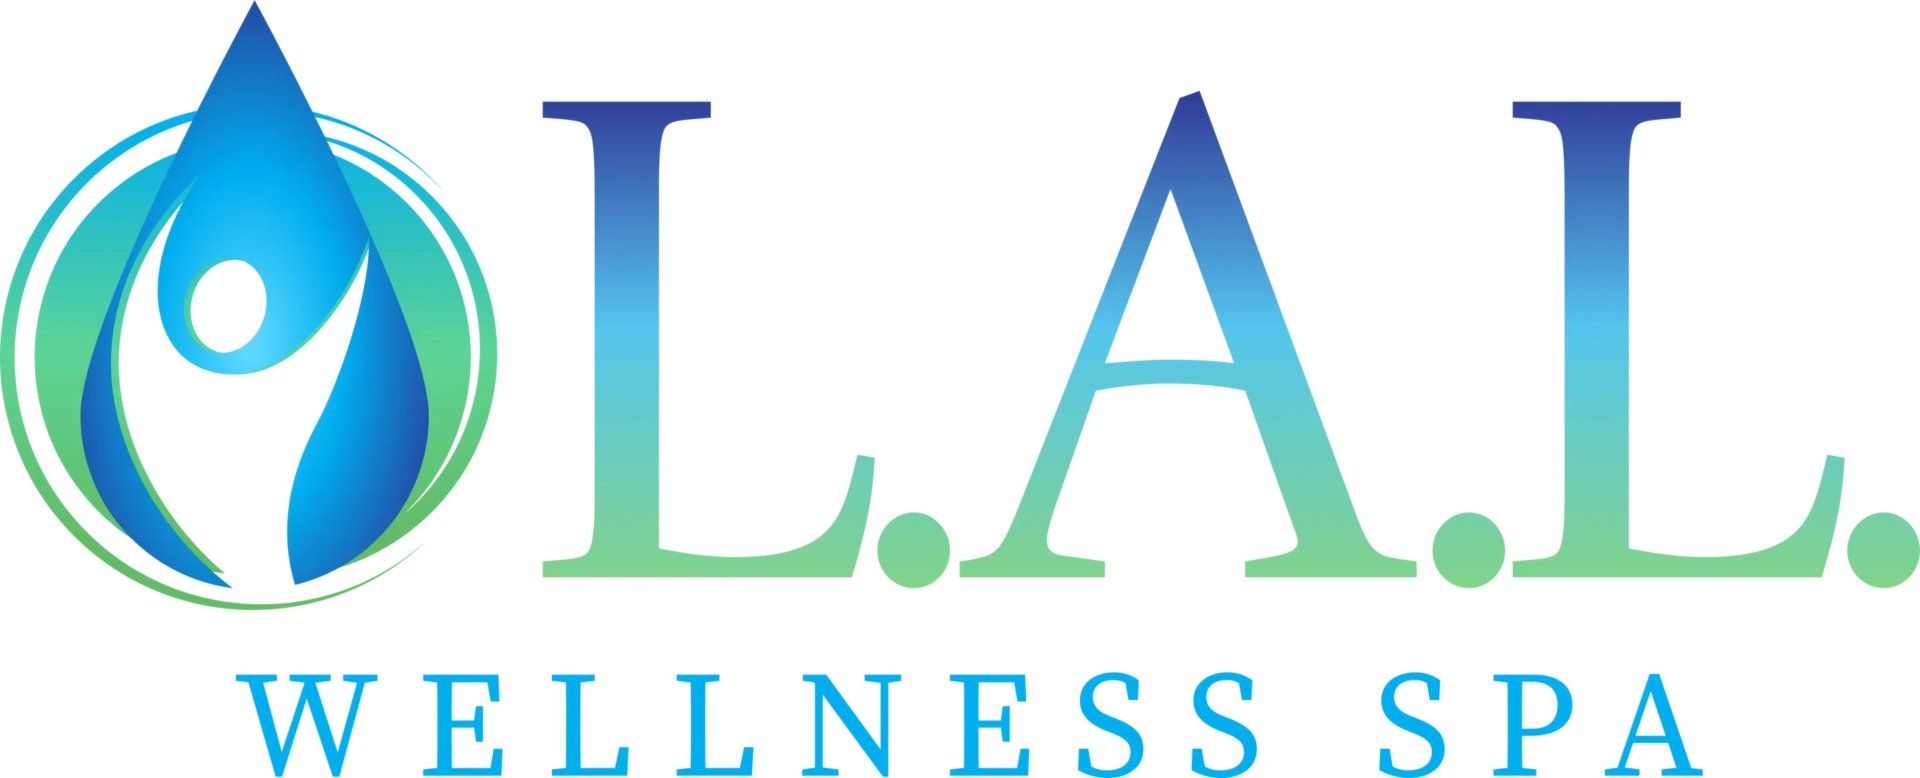 Wellness Spa in Clearwater, FL | L.A.L. Wellness Spa LLC